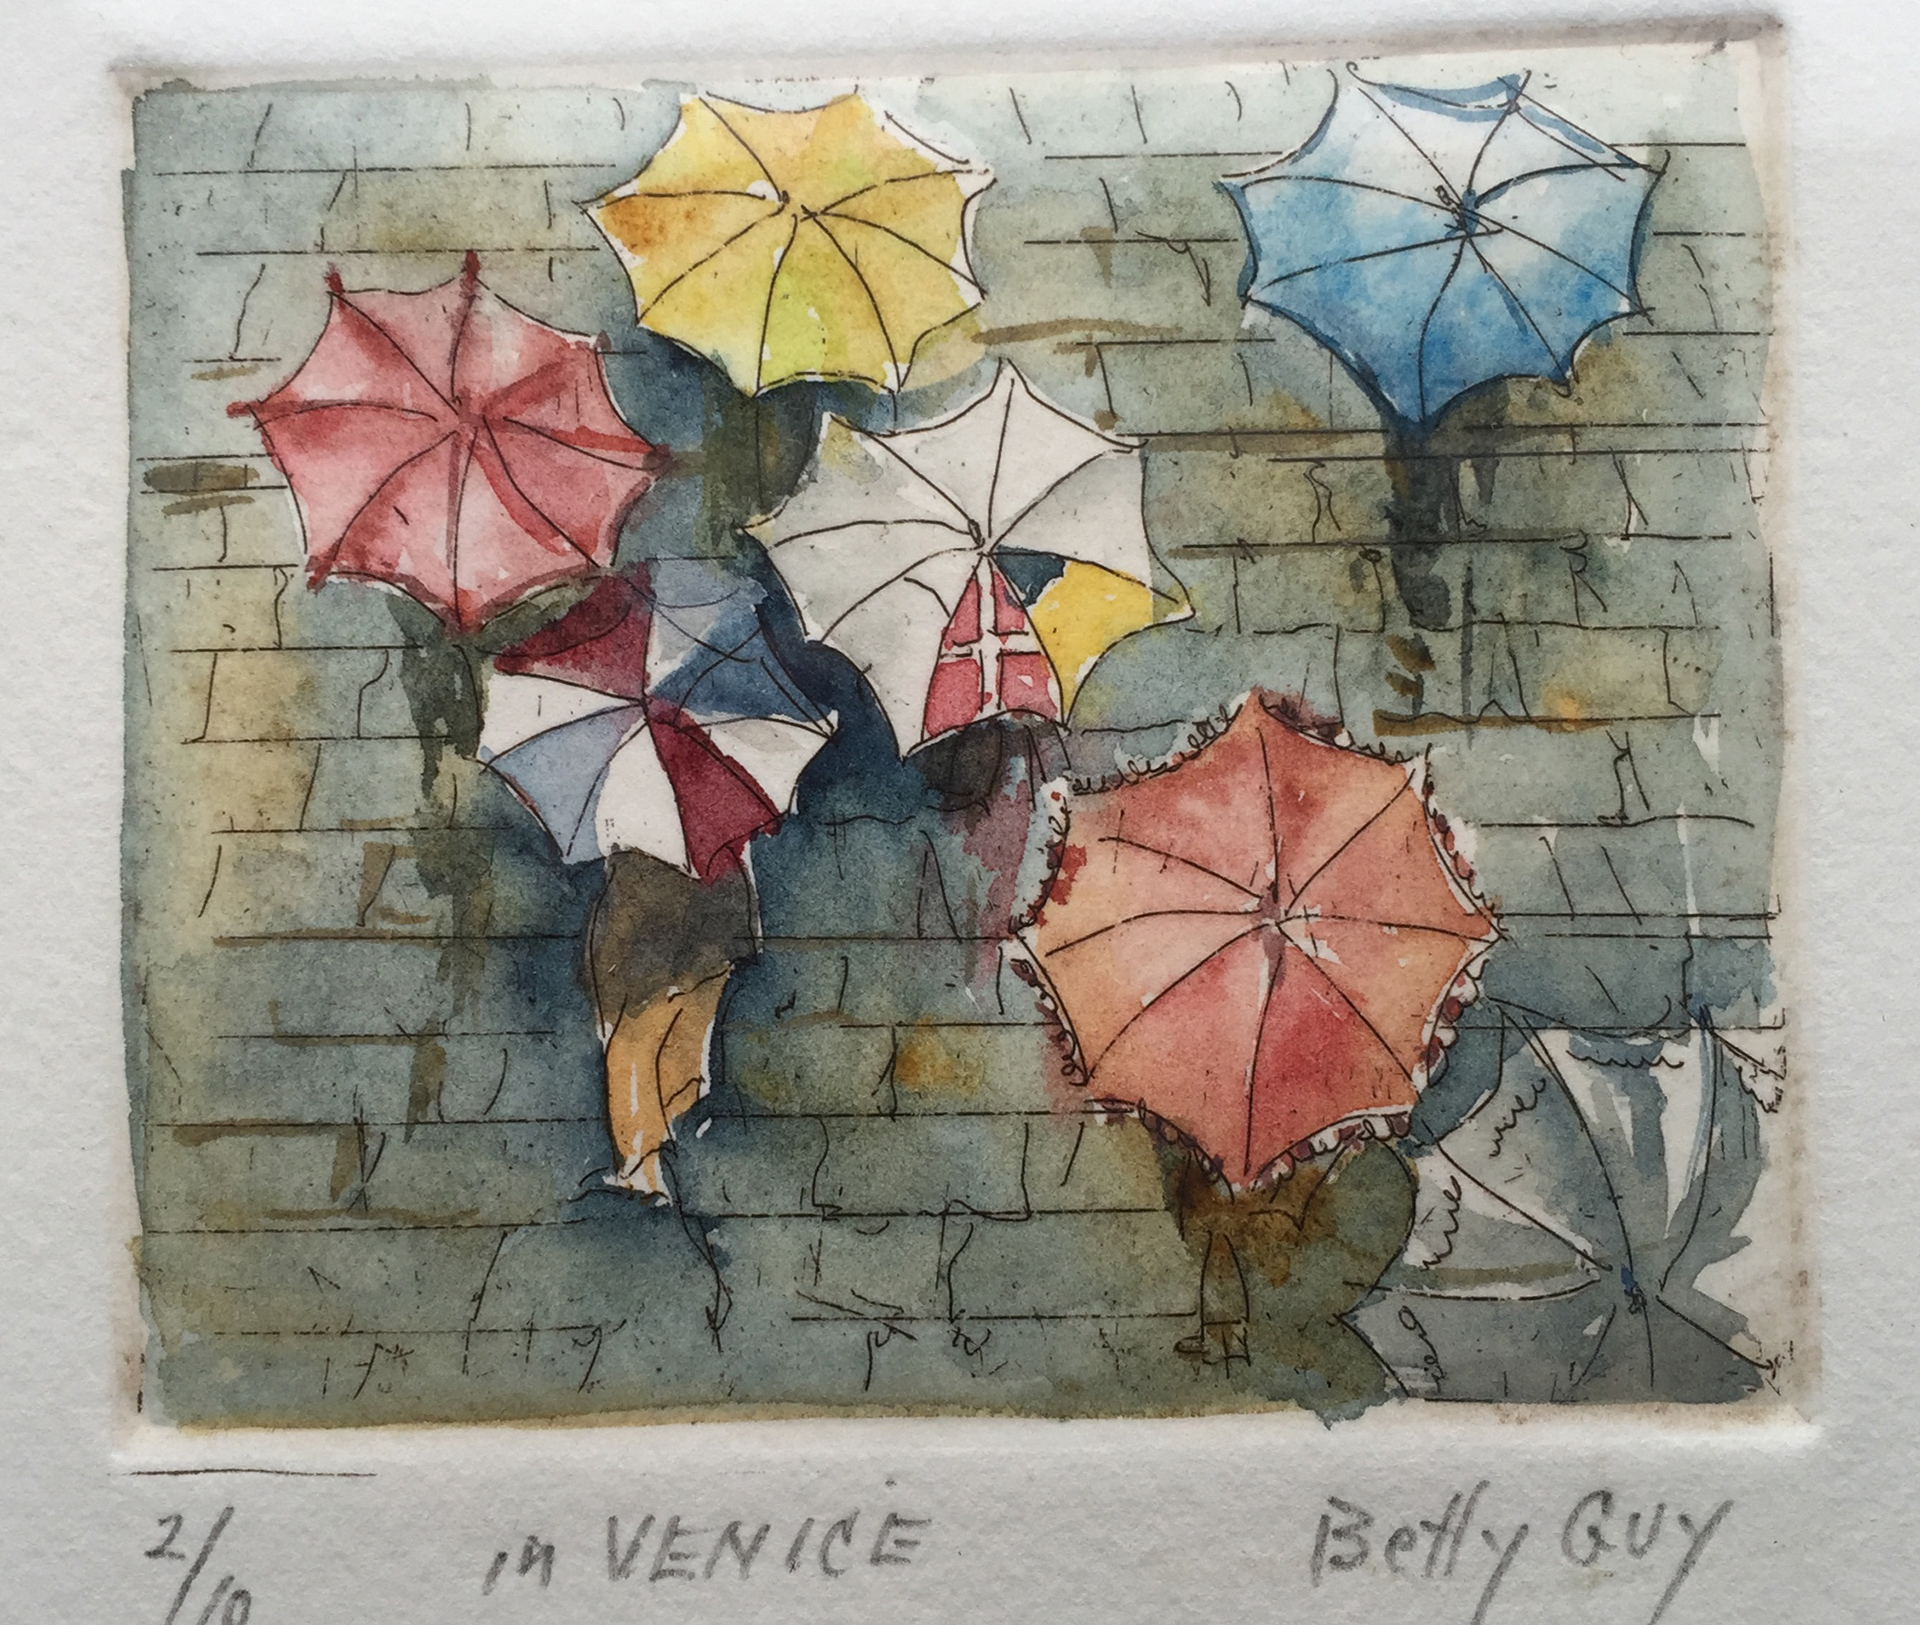 "In Venice" by Betty Guy